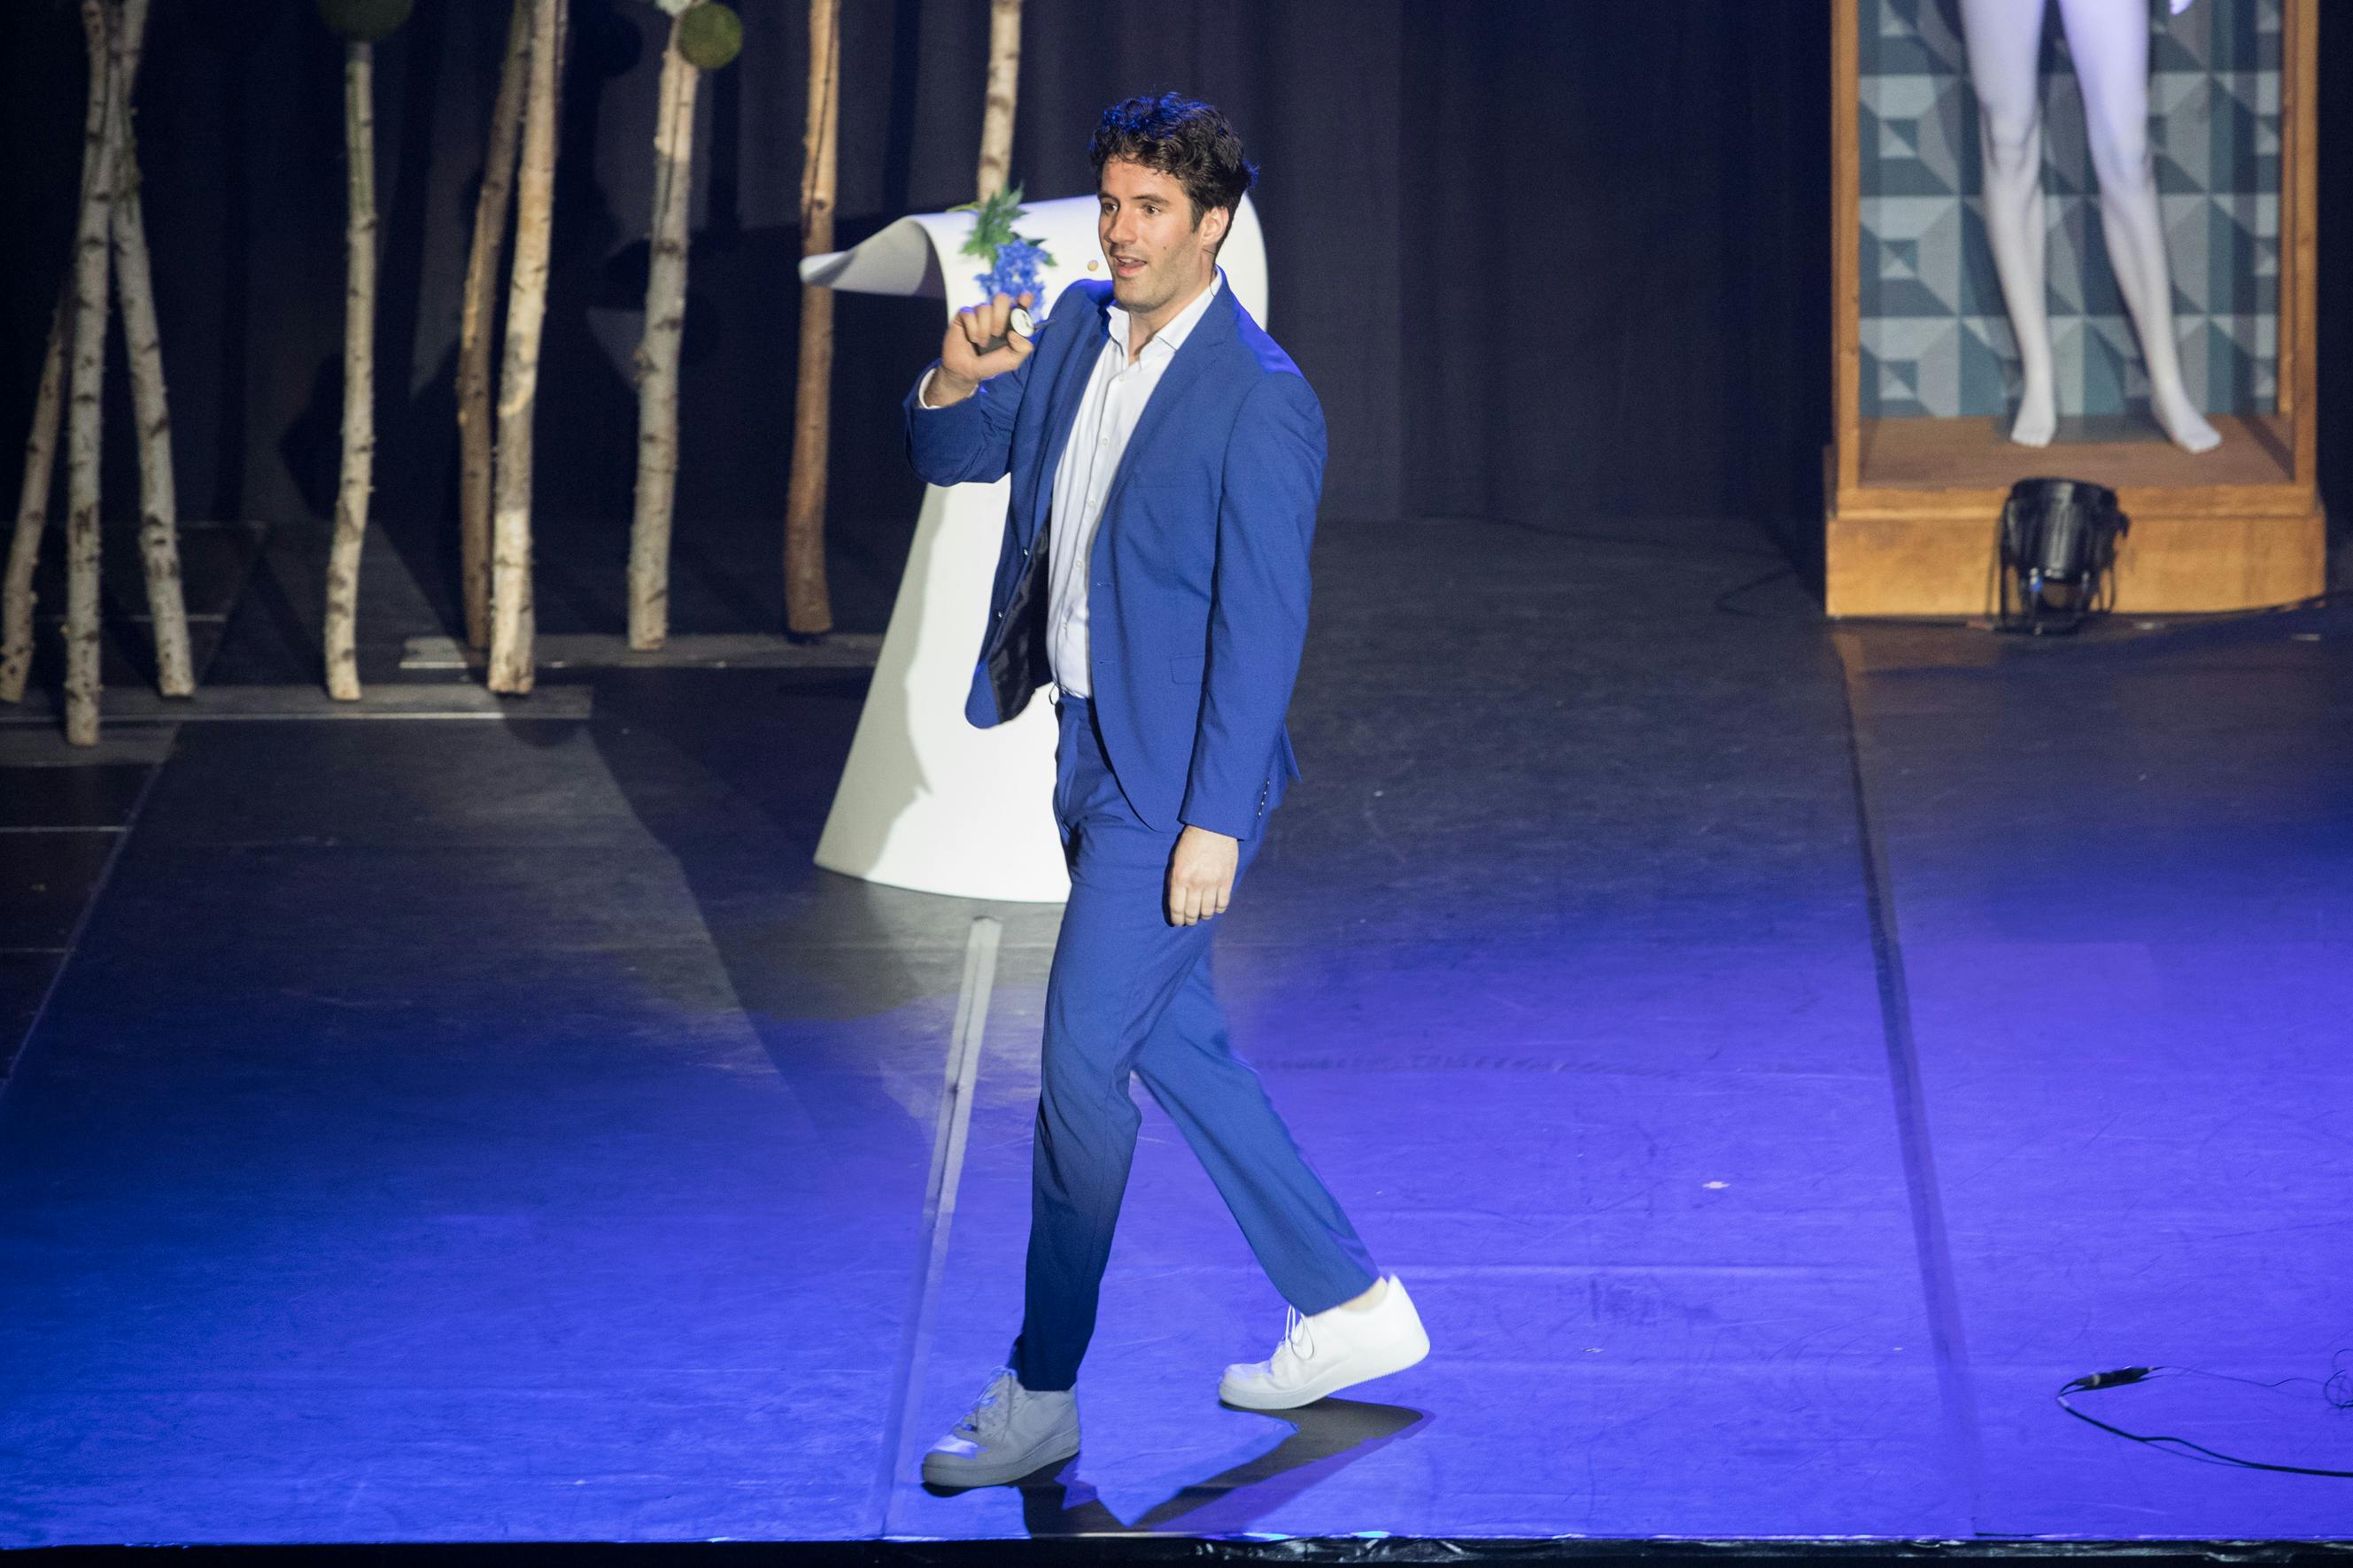 Sydney Brouwer presenteert lopend in blauw pak